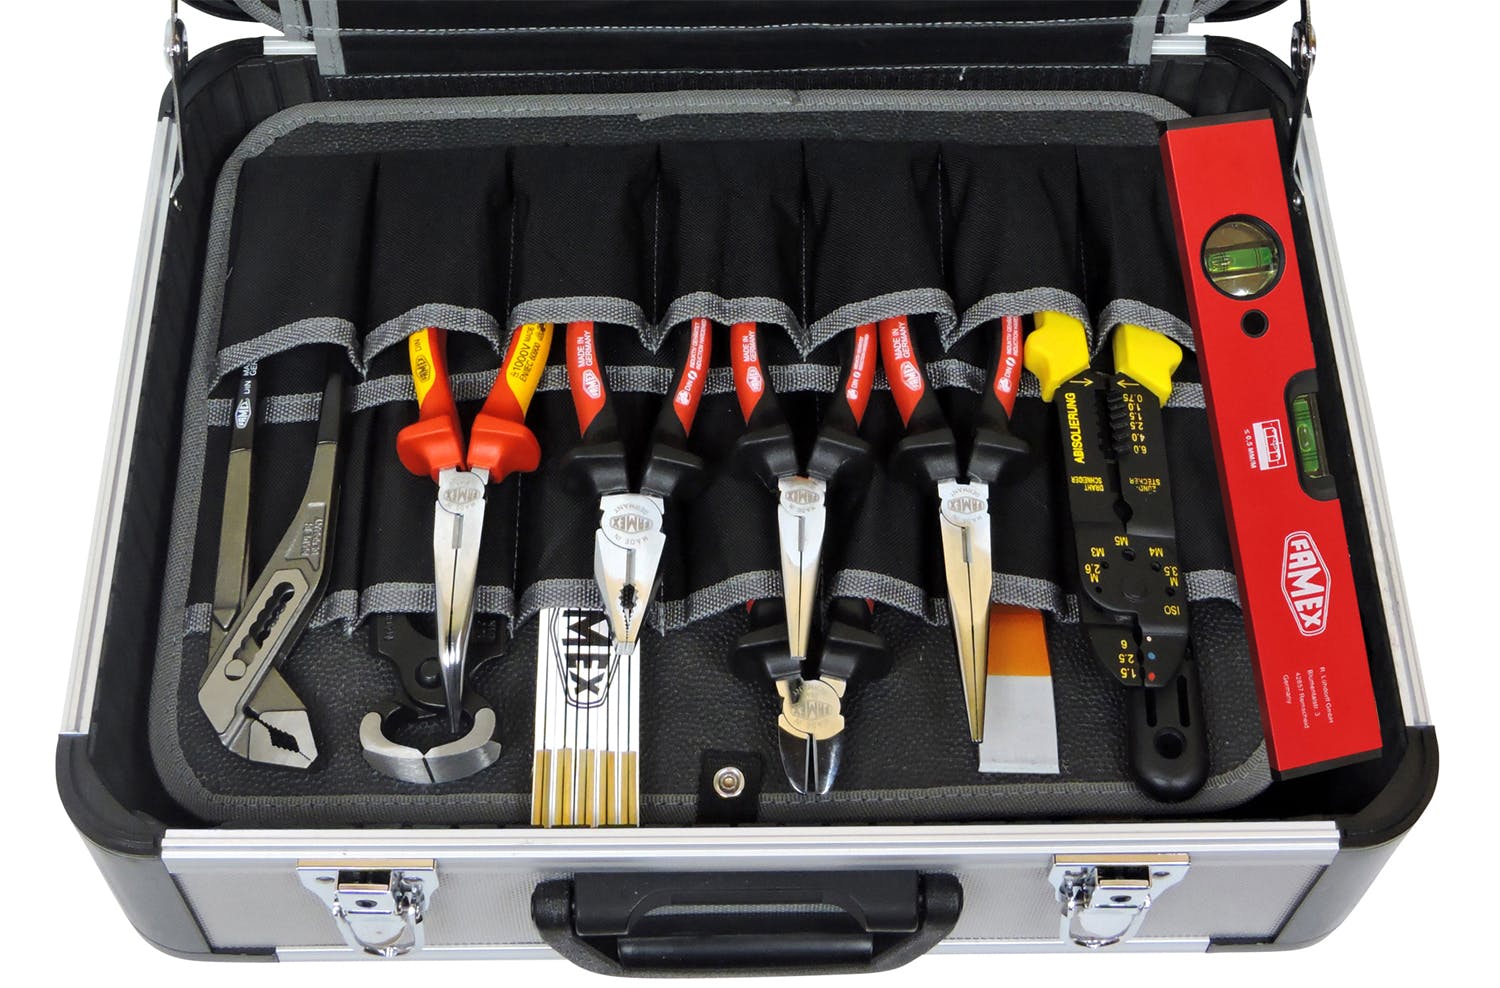 FAMEX 418-18 Werkzeug Marktplatz METRO Alu PROFESSIONAL Set, 195-tlg. | Werkzeugkoffer High-End - Profi mit